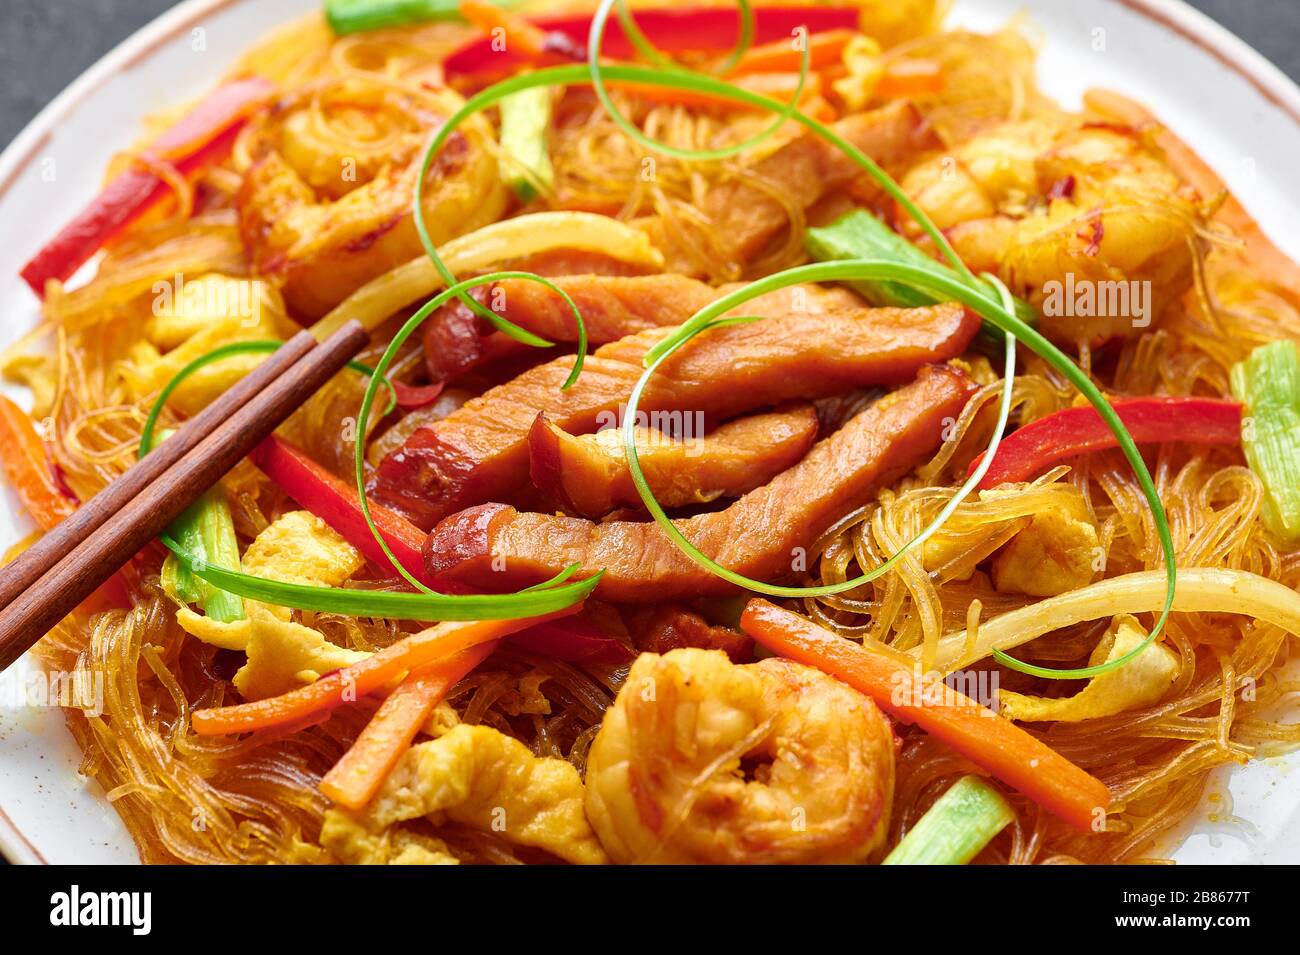 Singapore Mei Fun. Singapore Noodles è un piatto di cucina cinese con tagliatelle di riso, gamberi, maiale char siu, carota, cipolla rossa, cavolo di nappa. Cibo cinese. Foto Stock